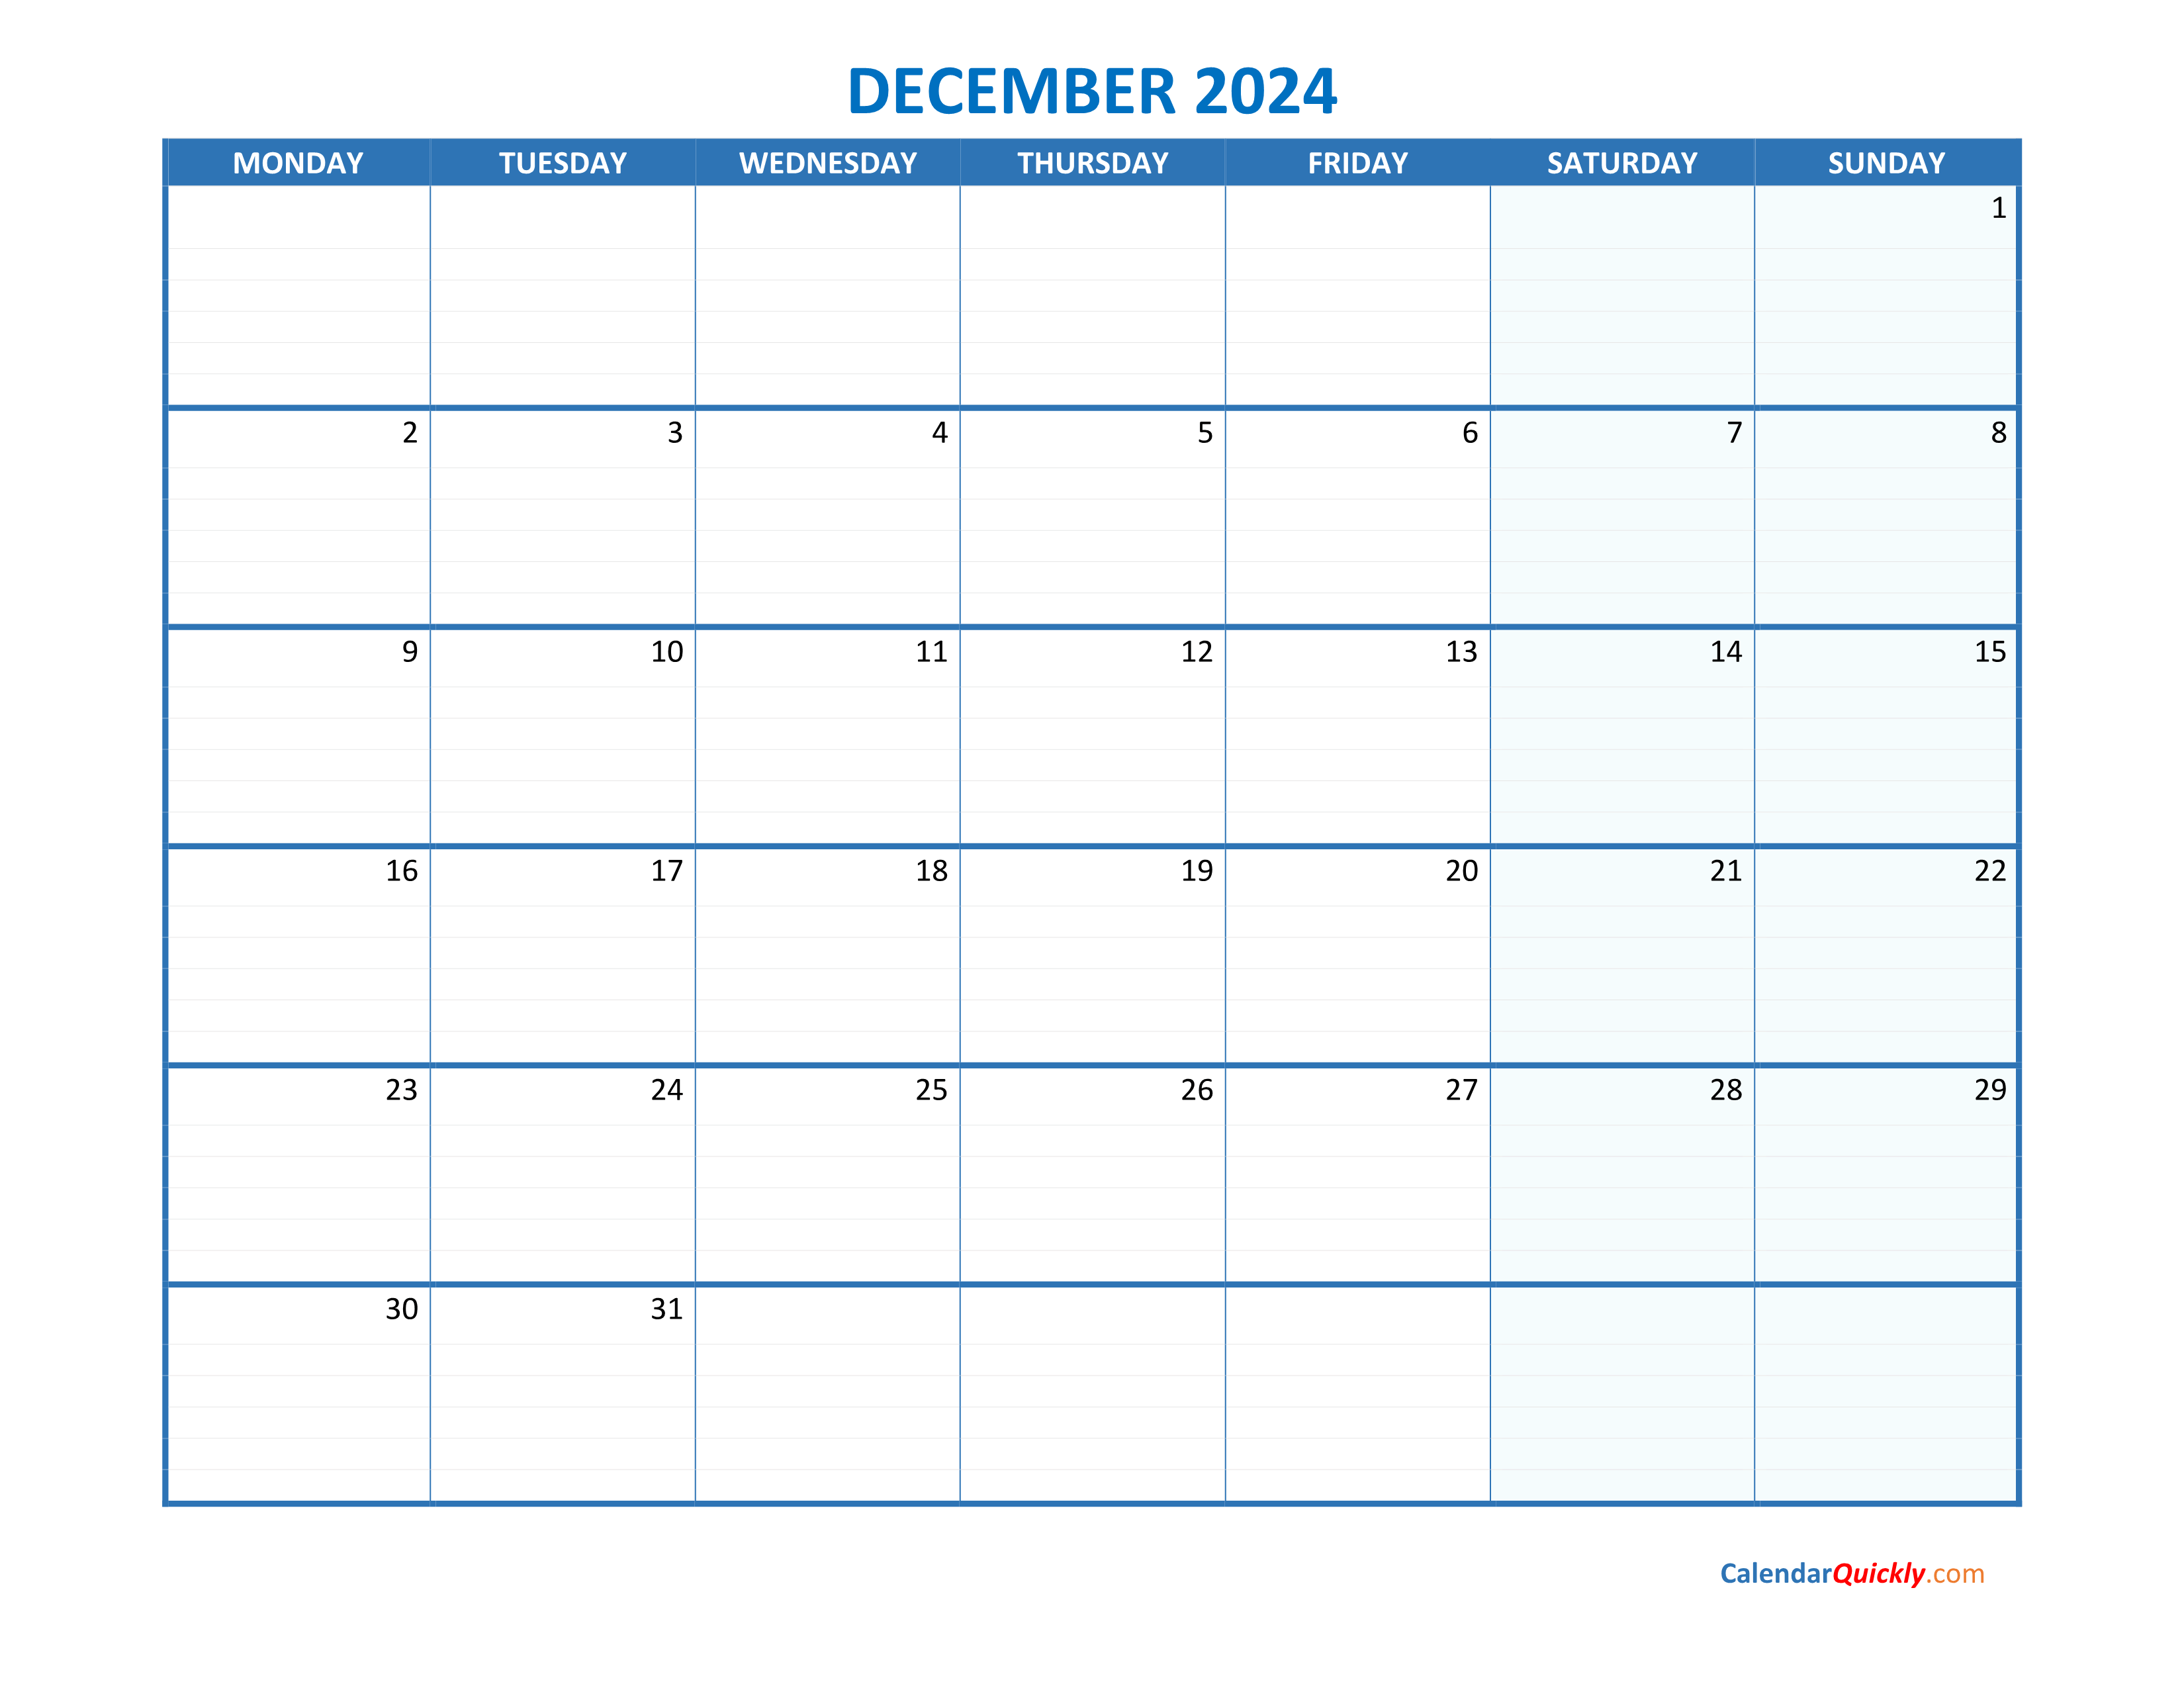 December Monday 2024 Blank Calendar | Calendar Quickly